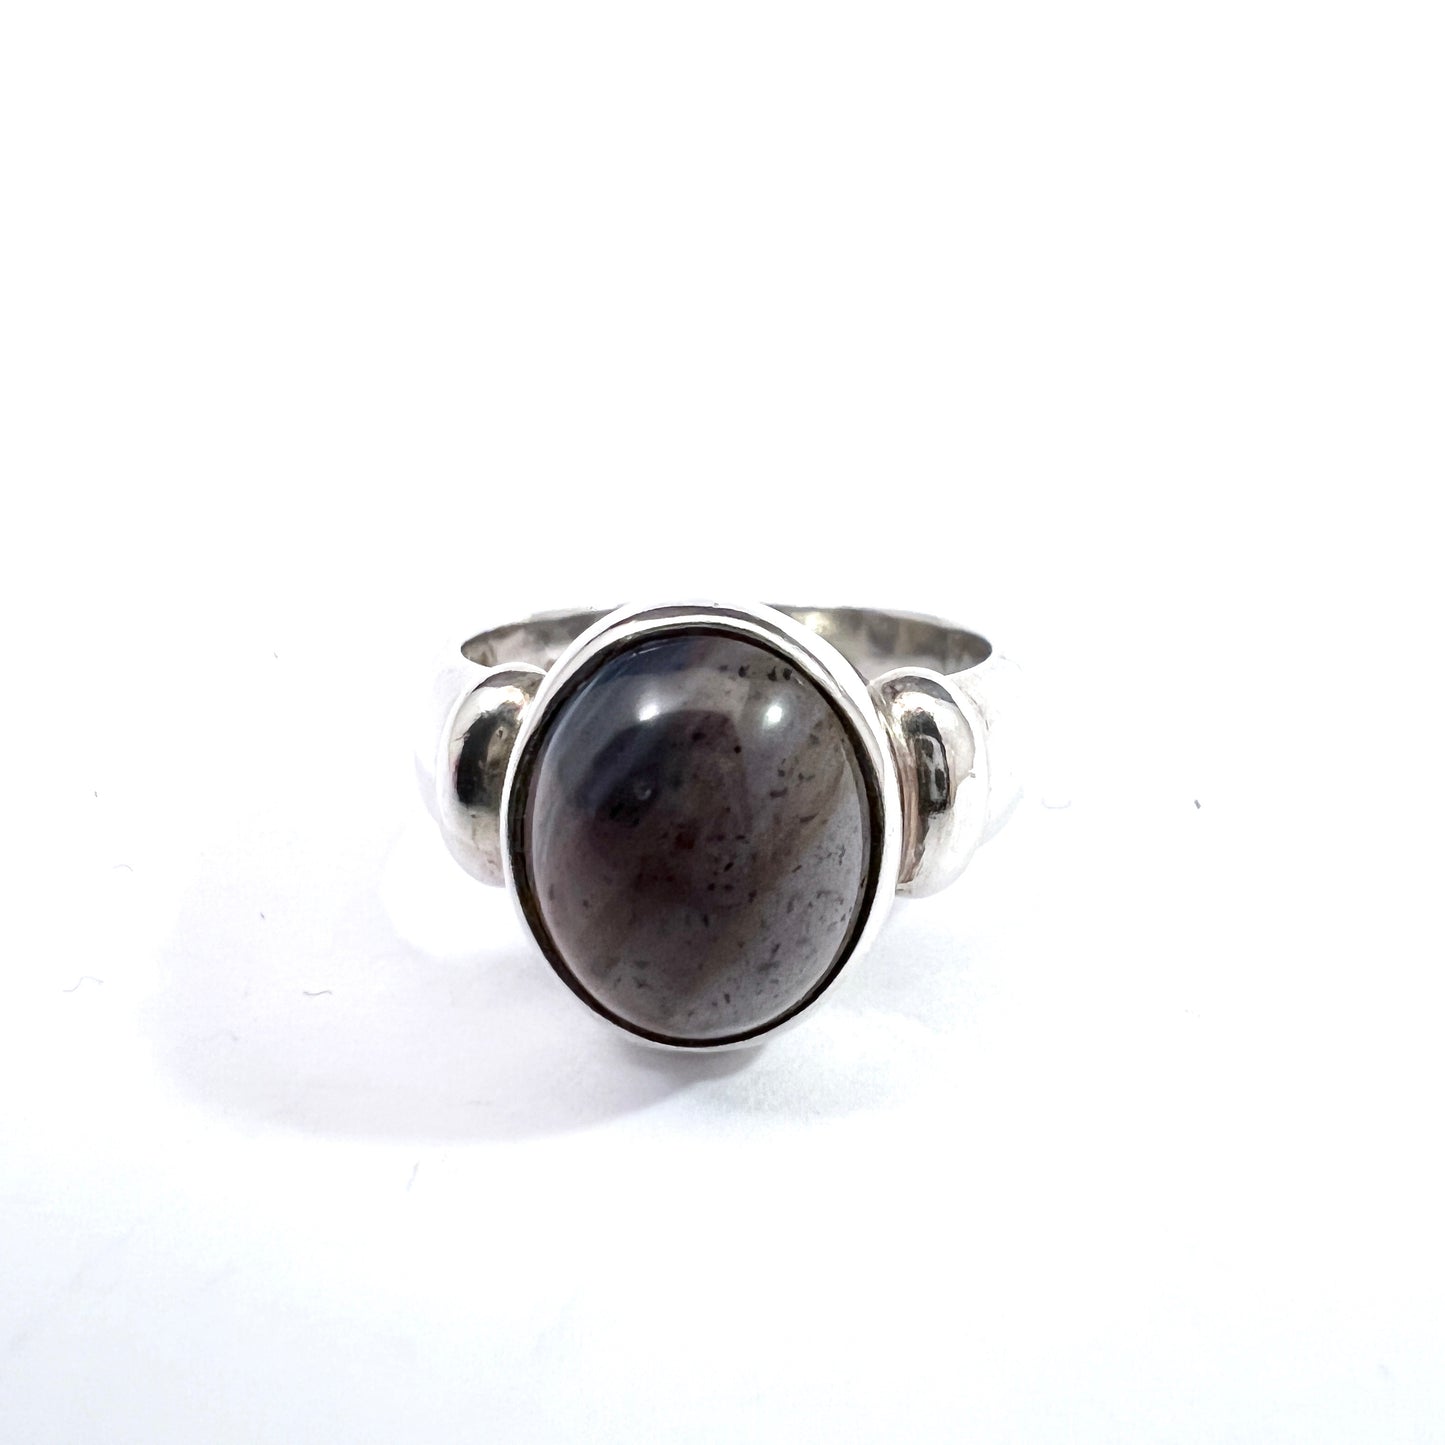 Nordström, Sweden 1970s. Vintage Sterling Silver Bergslagen-stone Ring.